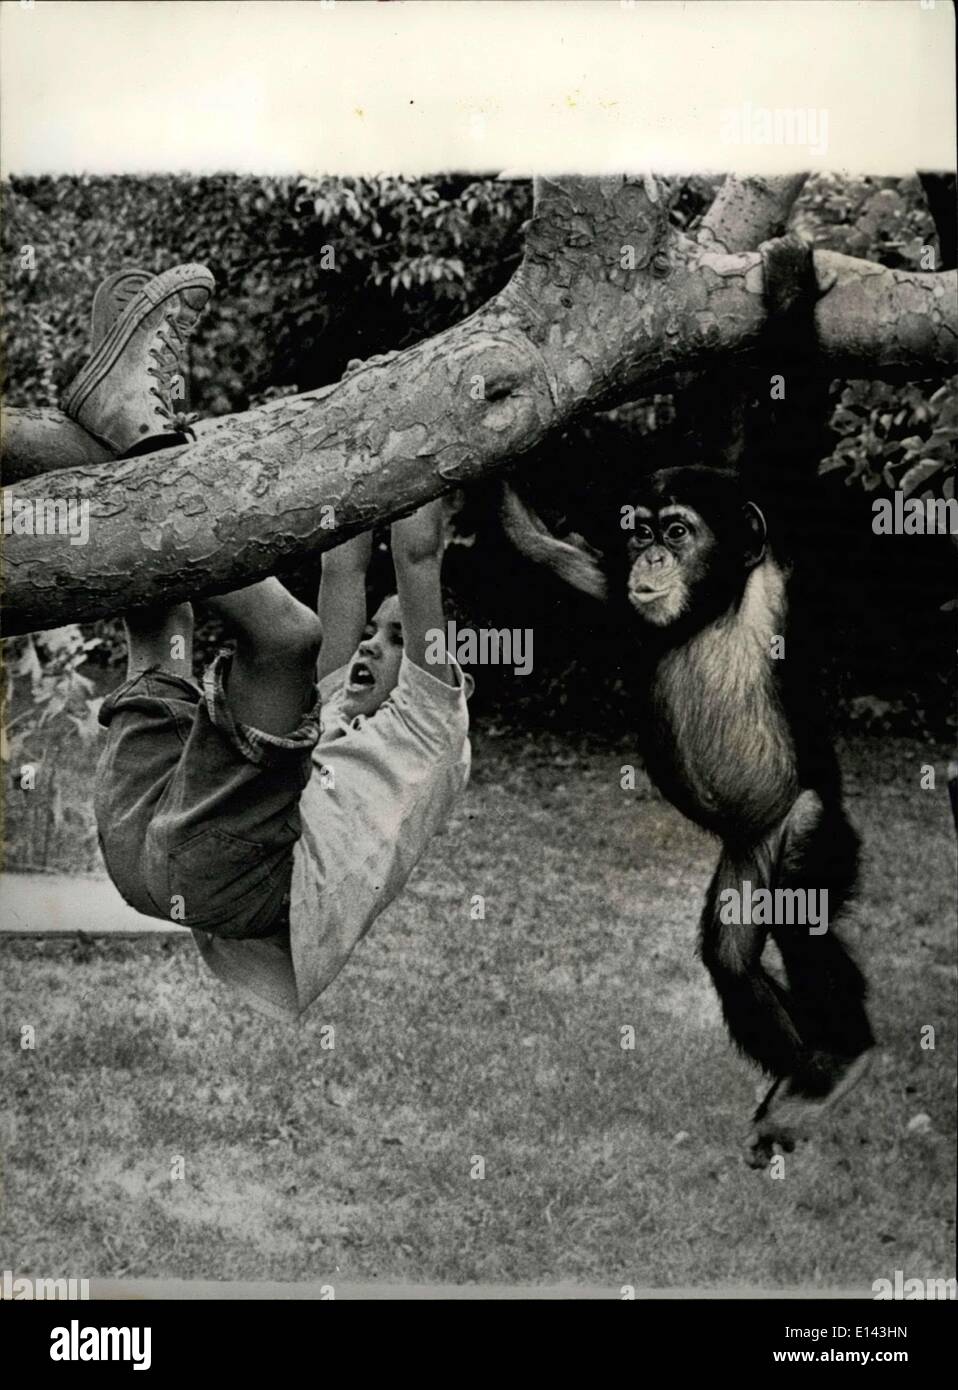 31 mars 2012 - maintenant c'est le 'américanisation'' de Susie. : Ce rare et touchante étude révèle la relation d'offres communes à deux cœurs simples, vivace un garçon et ses chères ami chimpanzé. Séparés par des milliers de kilomètres de son foyer et de la famille en Sierra Leone, le chimpanzé, ''récemment immigré'' à l'Amérique. Adopté par Peace Corps Merrick Lockwood travailleur en service outre-mer, le chimpanzé appelé Susie est déjà d'avoir fait des amis avec la moitié de la ville de la Nouvelle Angleterre et volé le coeur de tous les enfants dans le quartier Banque D'Images